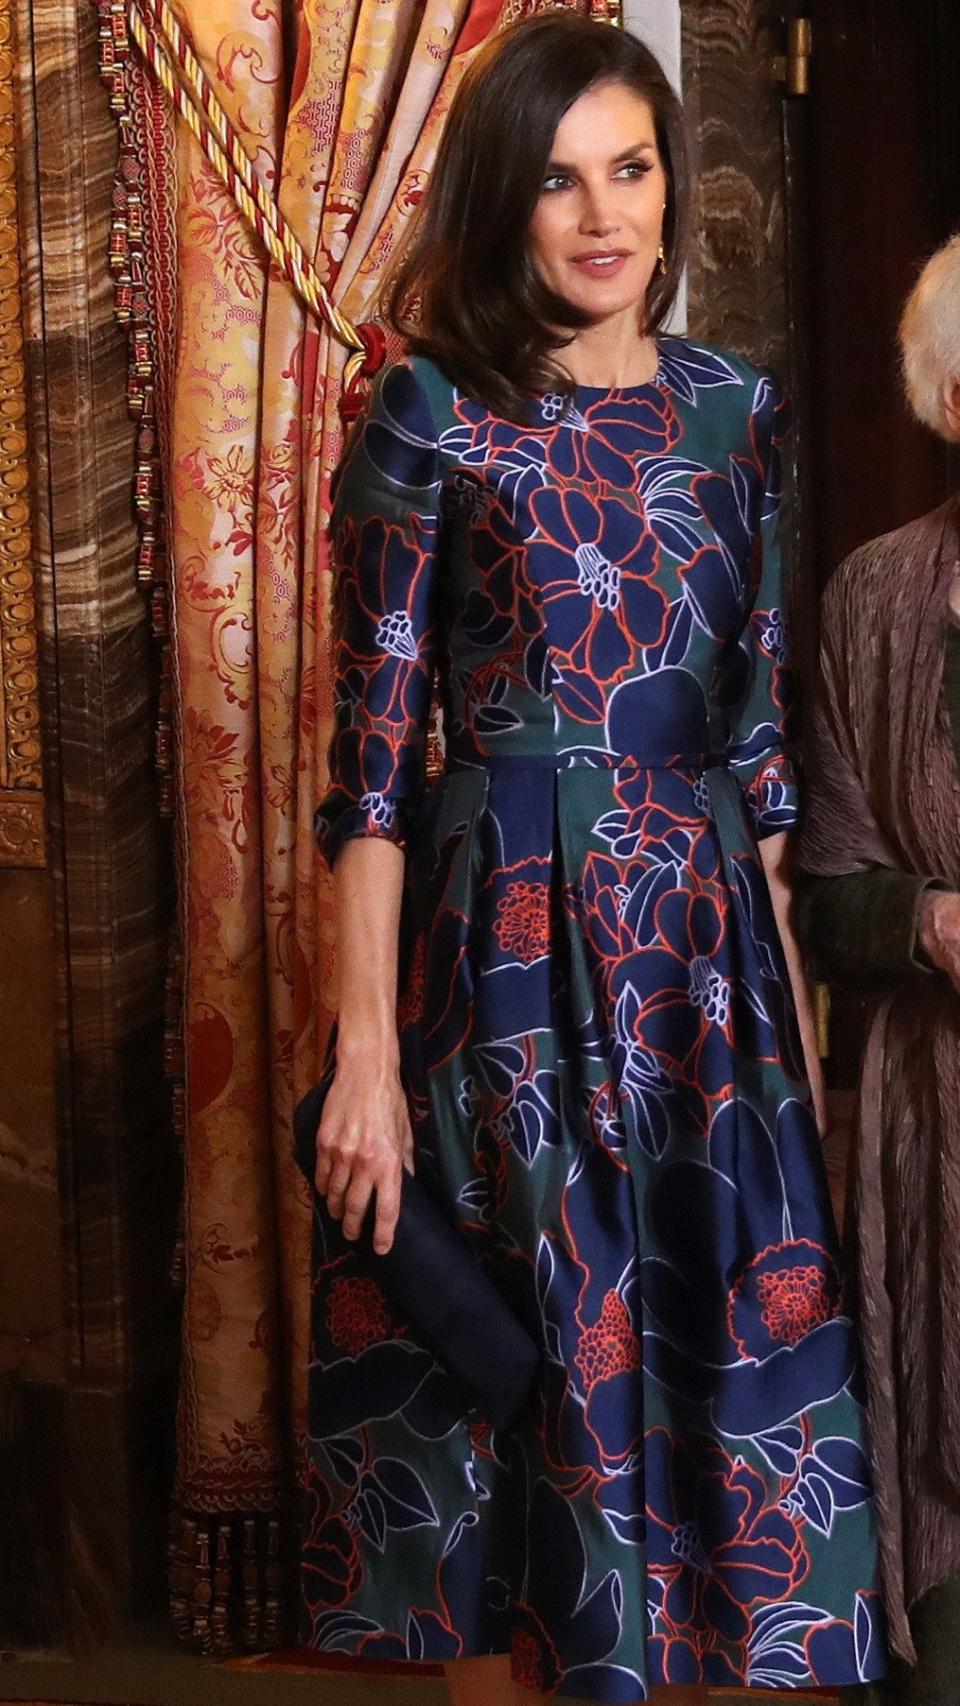 La reina Letizia ha vuelto a lucir el vestido de Carolina Herrera que escogió para su última visita a Londres.